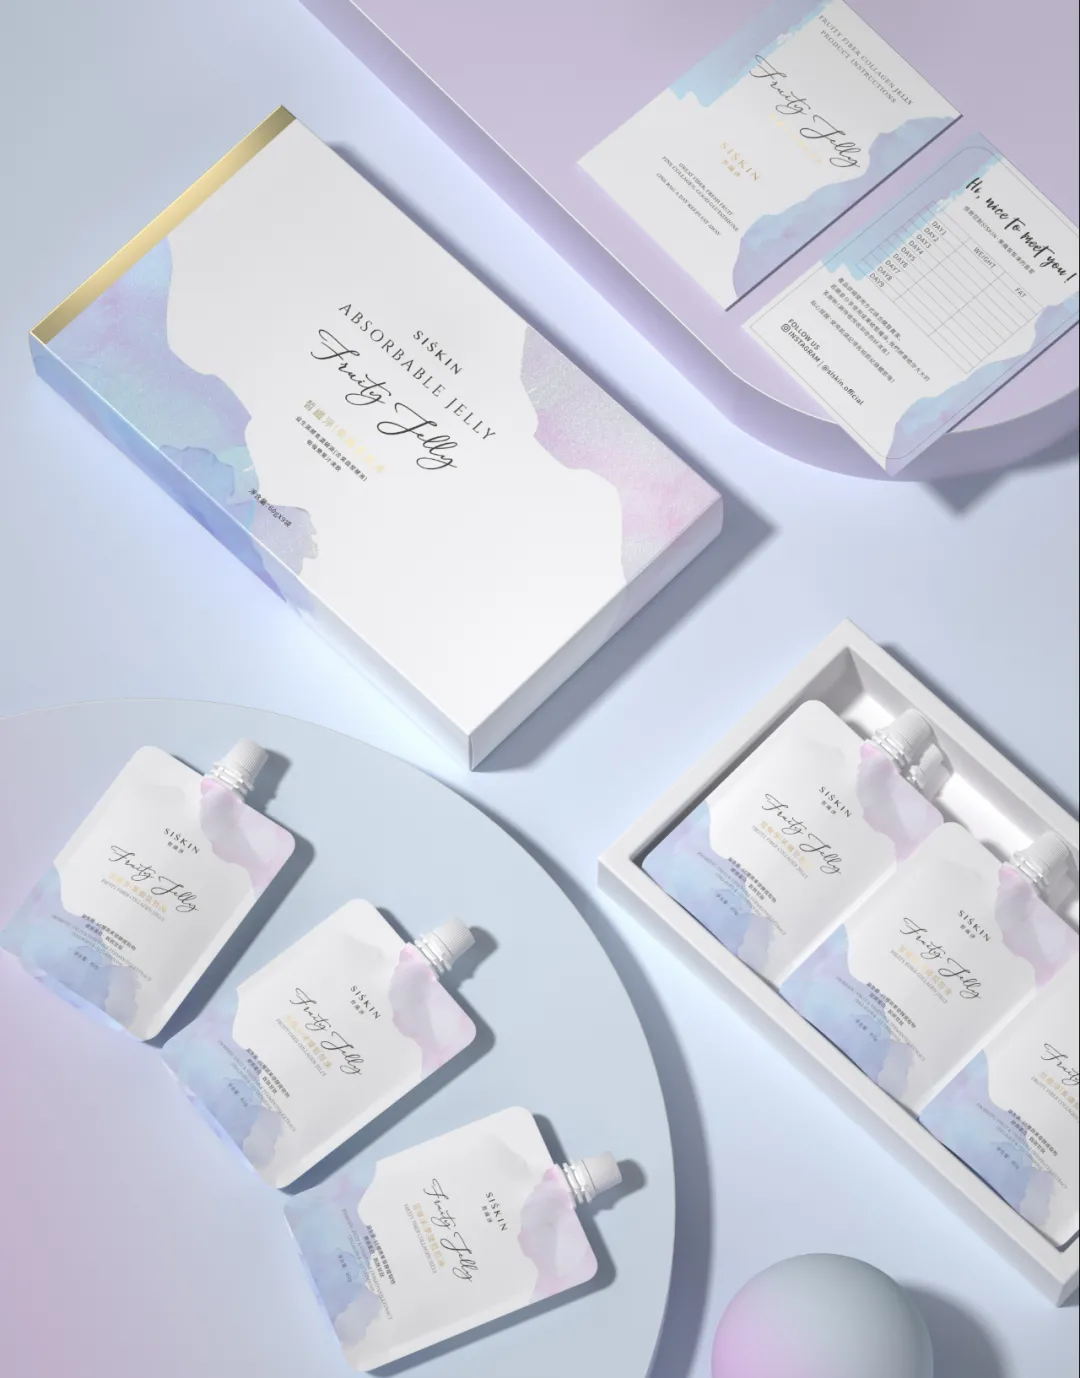 图片来源：Hellolinkvip   设计：Hellolink 品牌设计颜究院在包装配色上，采用粉紫、粉蓝等渐变的颜色营造出梦幻的少女感。包装材质上使用银卡纸印色加强质感，渐变处的逆向uv工艺提